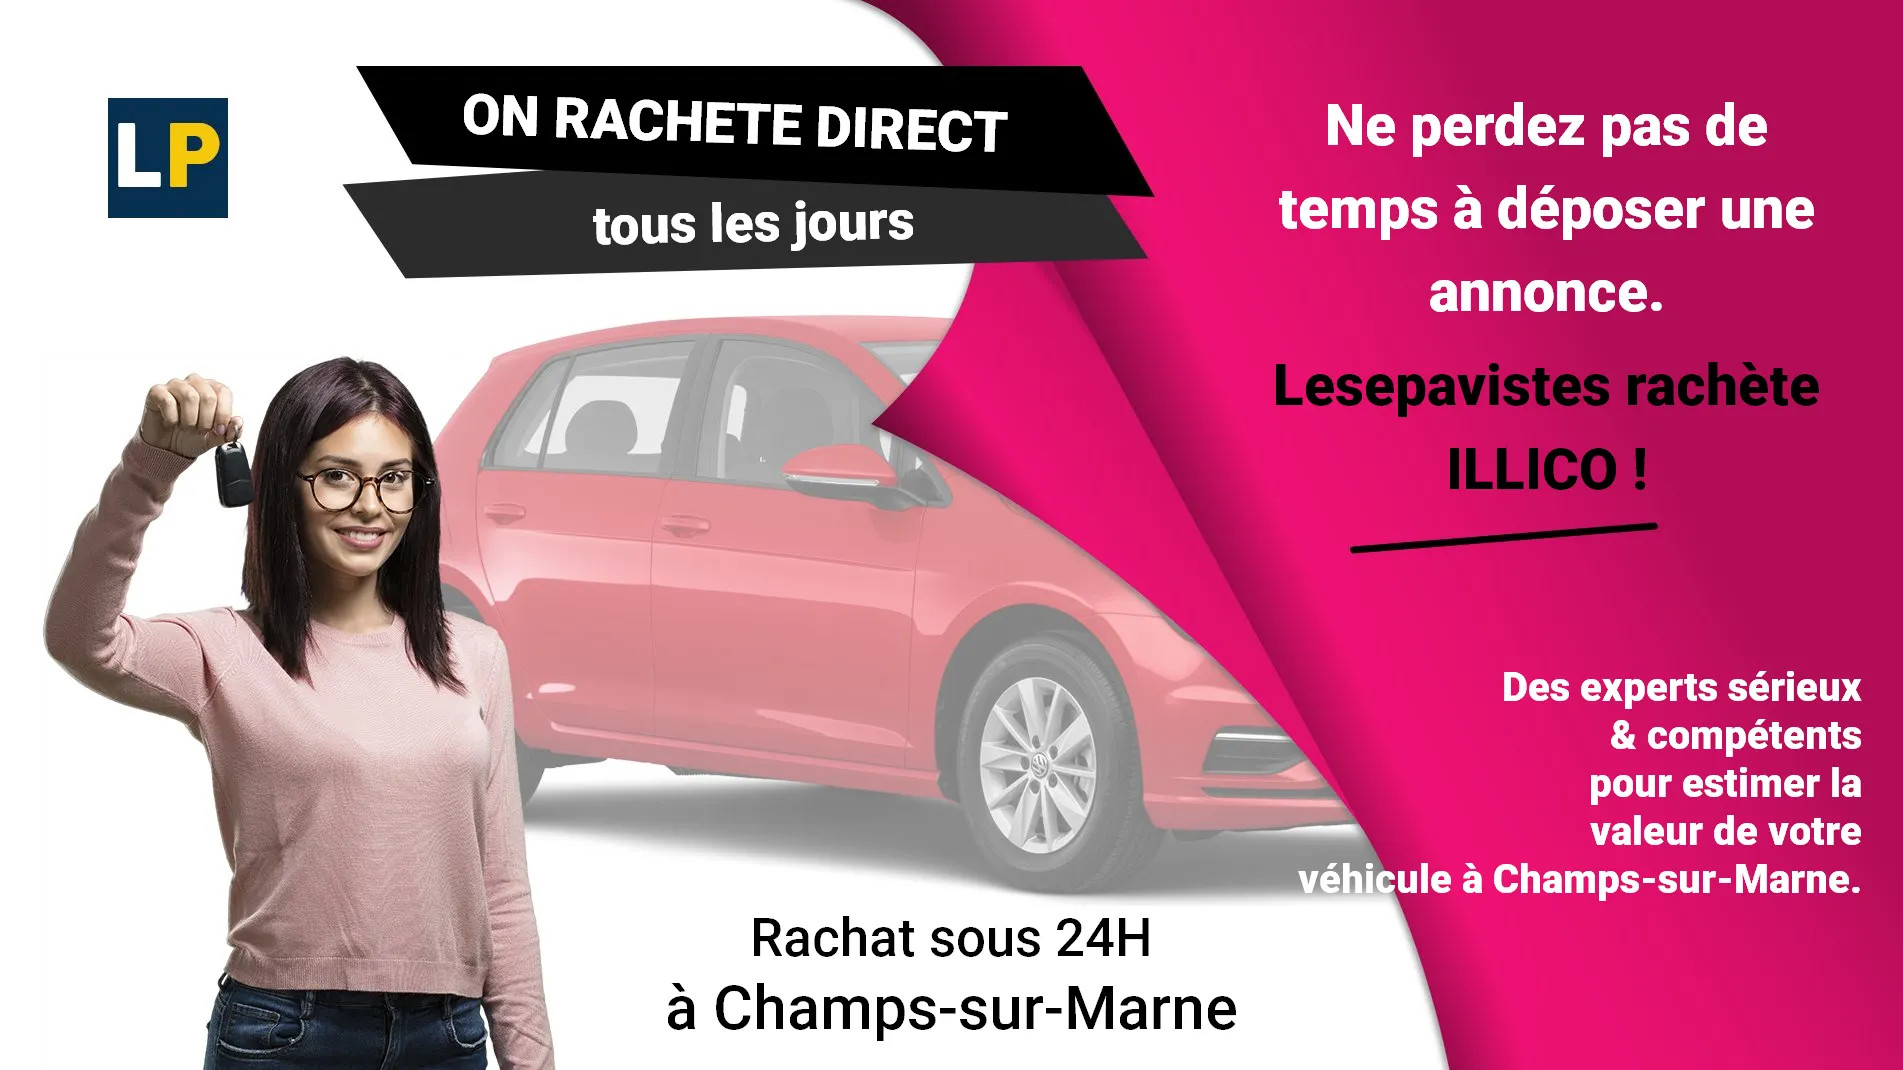 Rachat et reprise de voiture d'occasion à Champs-sur-Marne